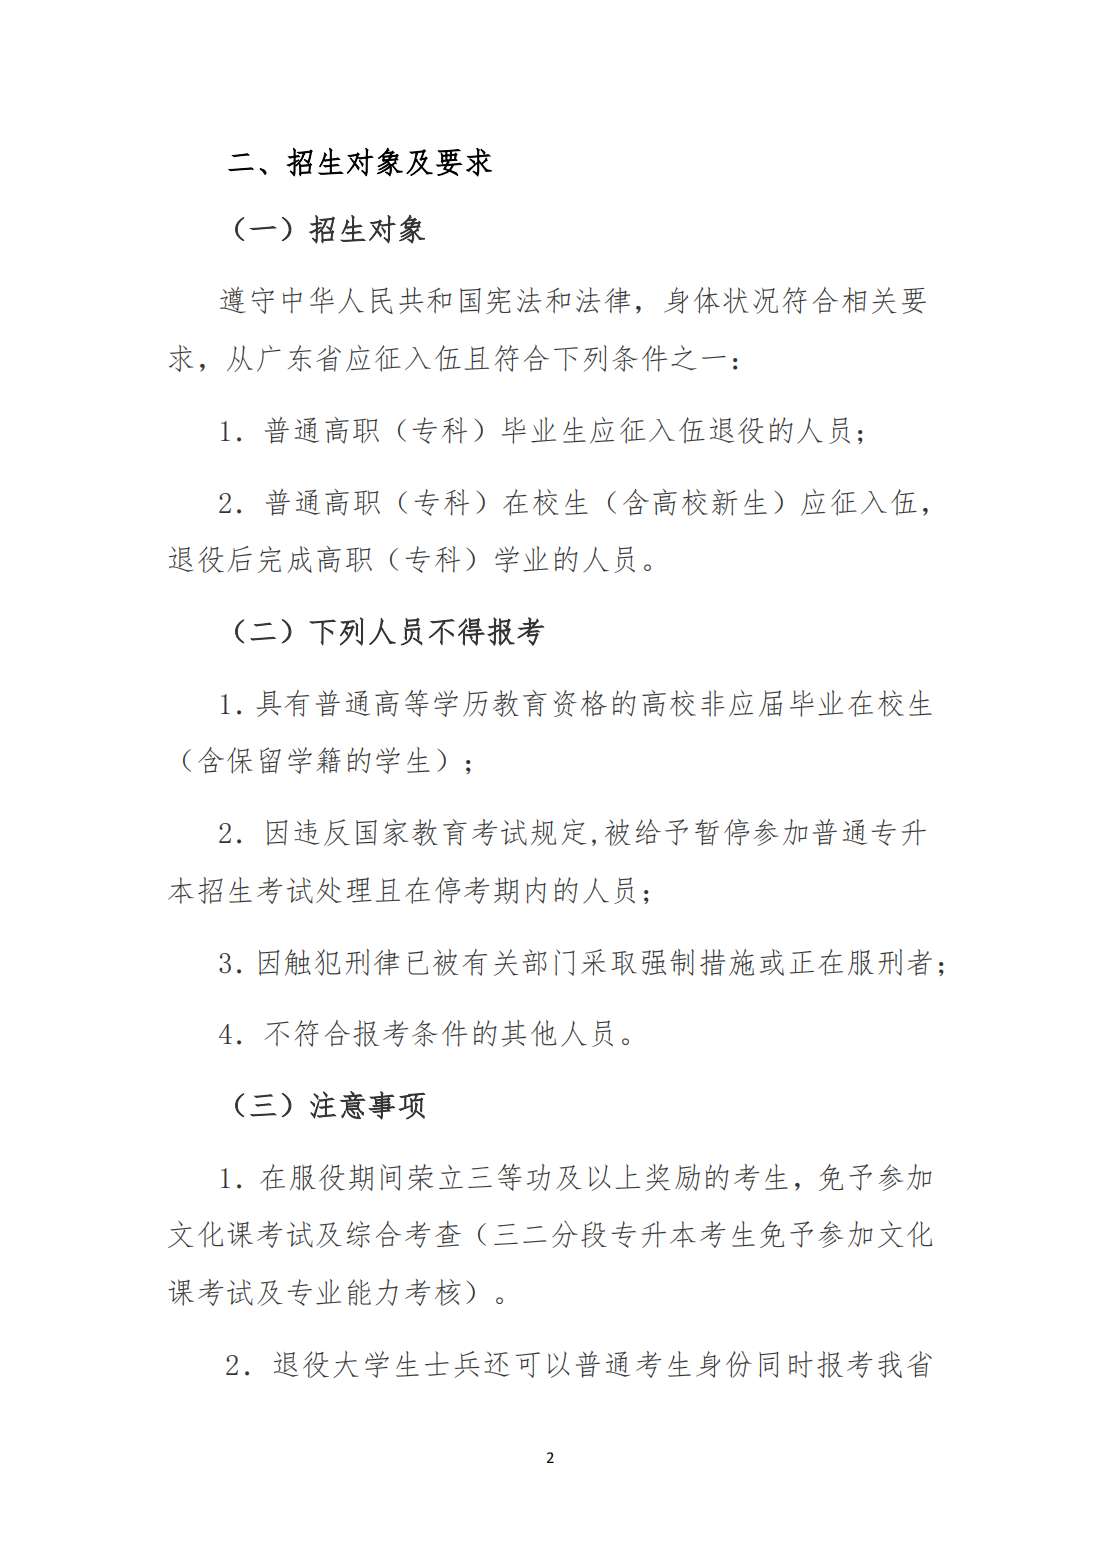 广州工商学院2023年退役大学生士兵普通专升本招生简章